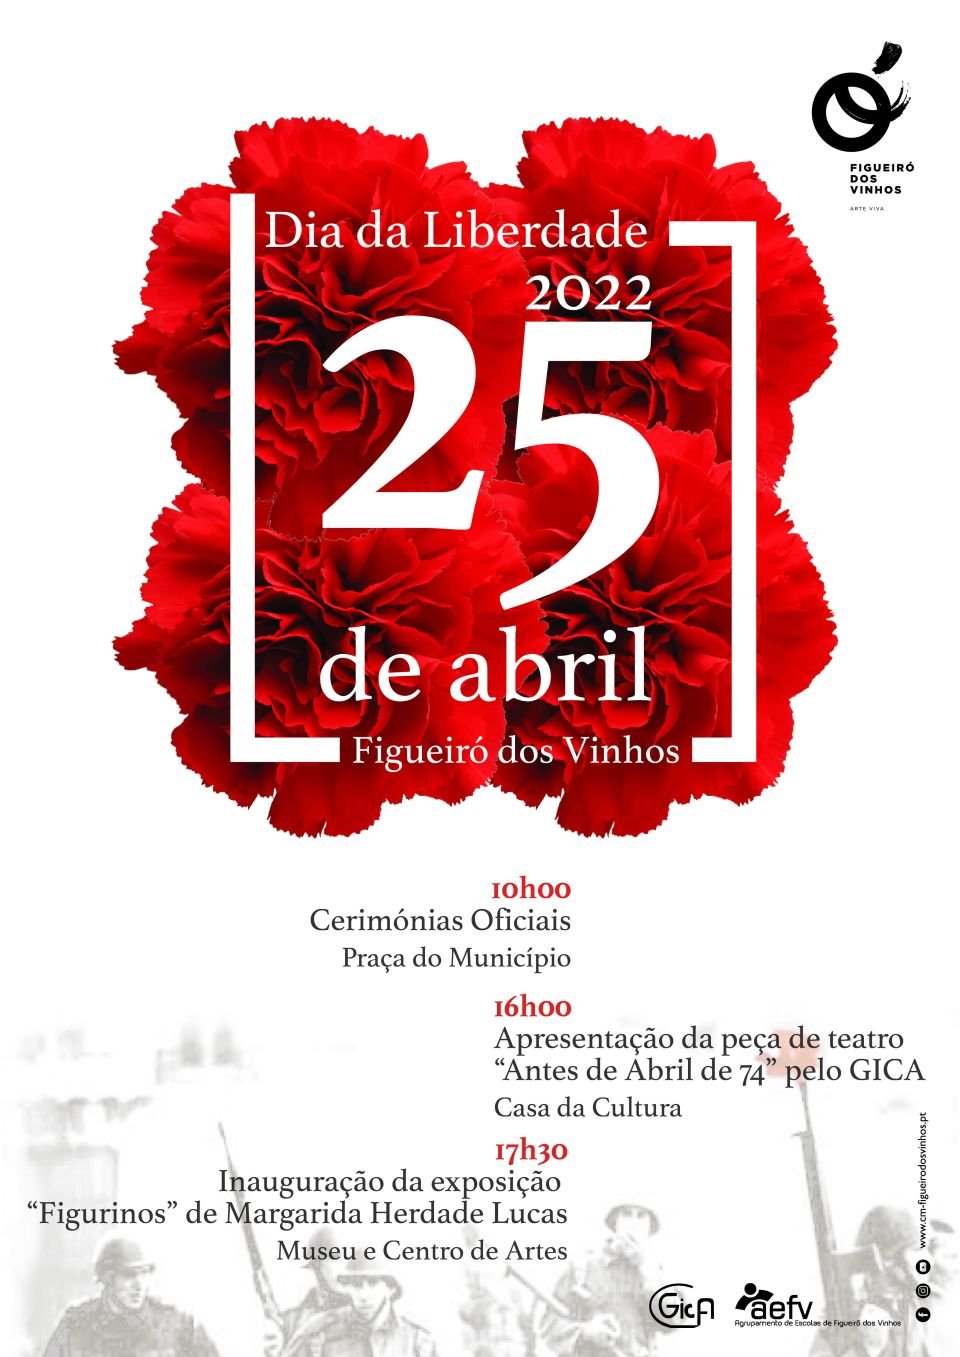 Comemorações do 25 de abril - Dia da Liberdade